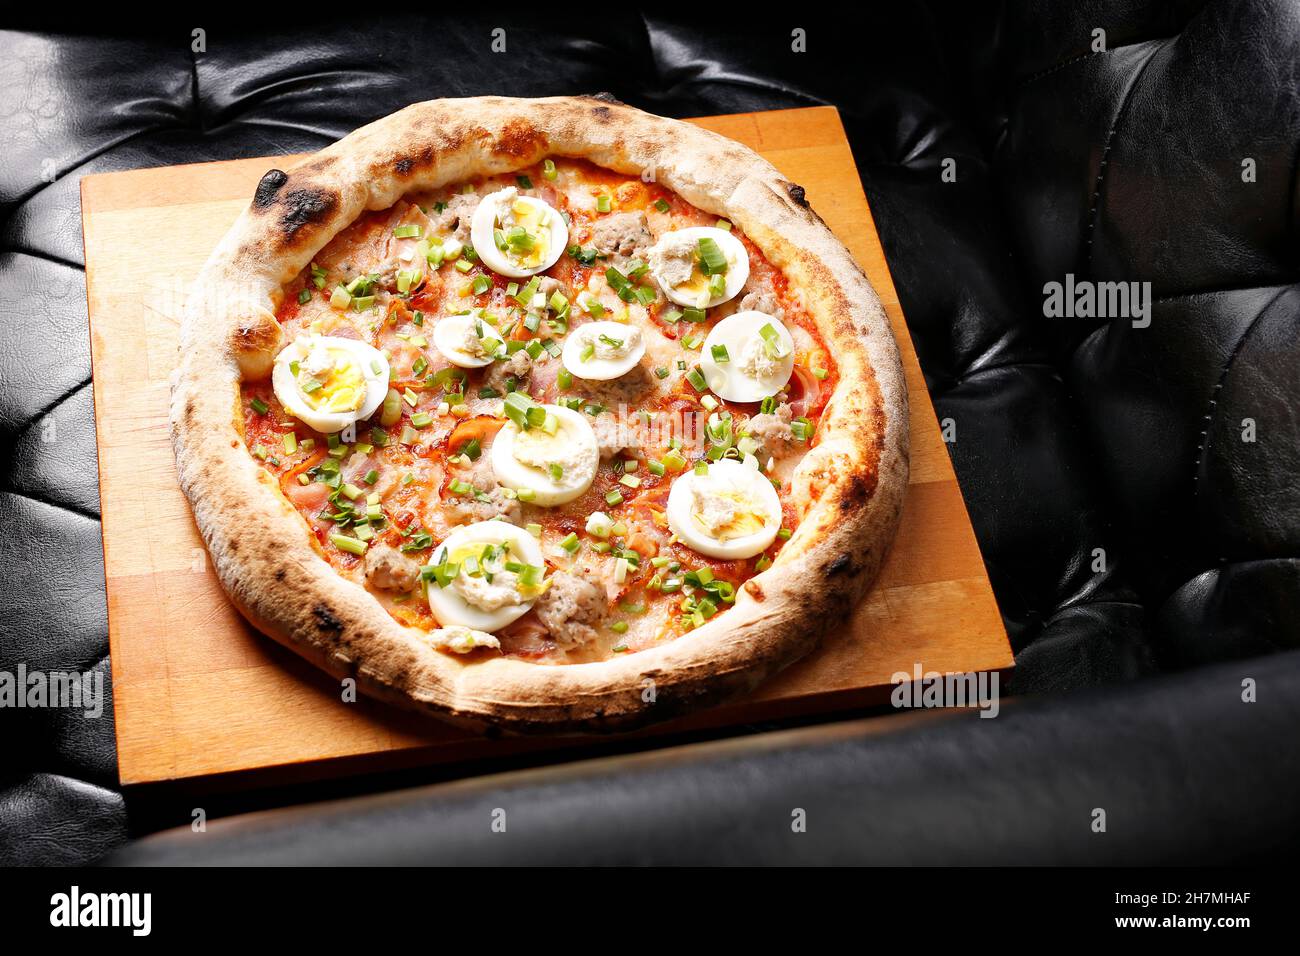 Pizza mit Speck, Ei und grünem Schnittlauch. Ein leckeres Gericht.kulinarische Fotografie. Vorschlag, das Gericht zu servieren. Stockfoto